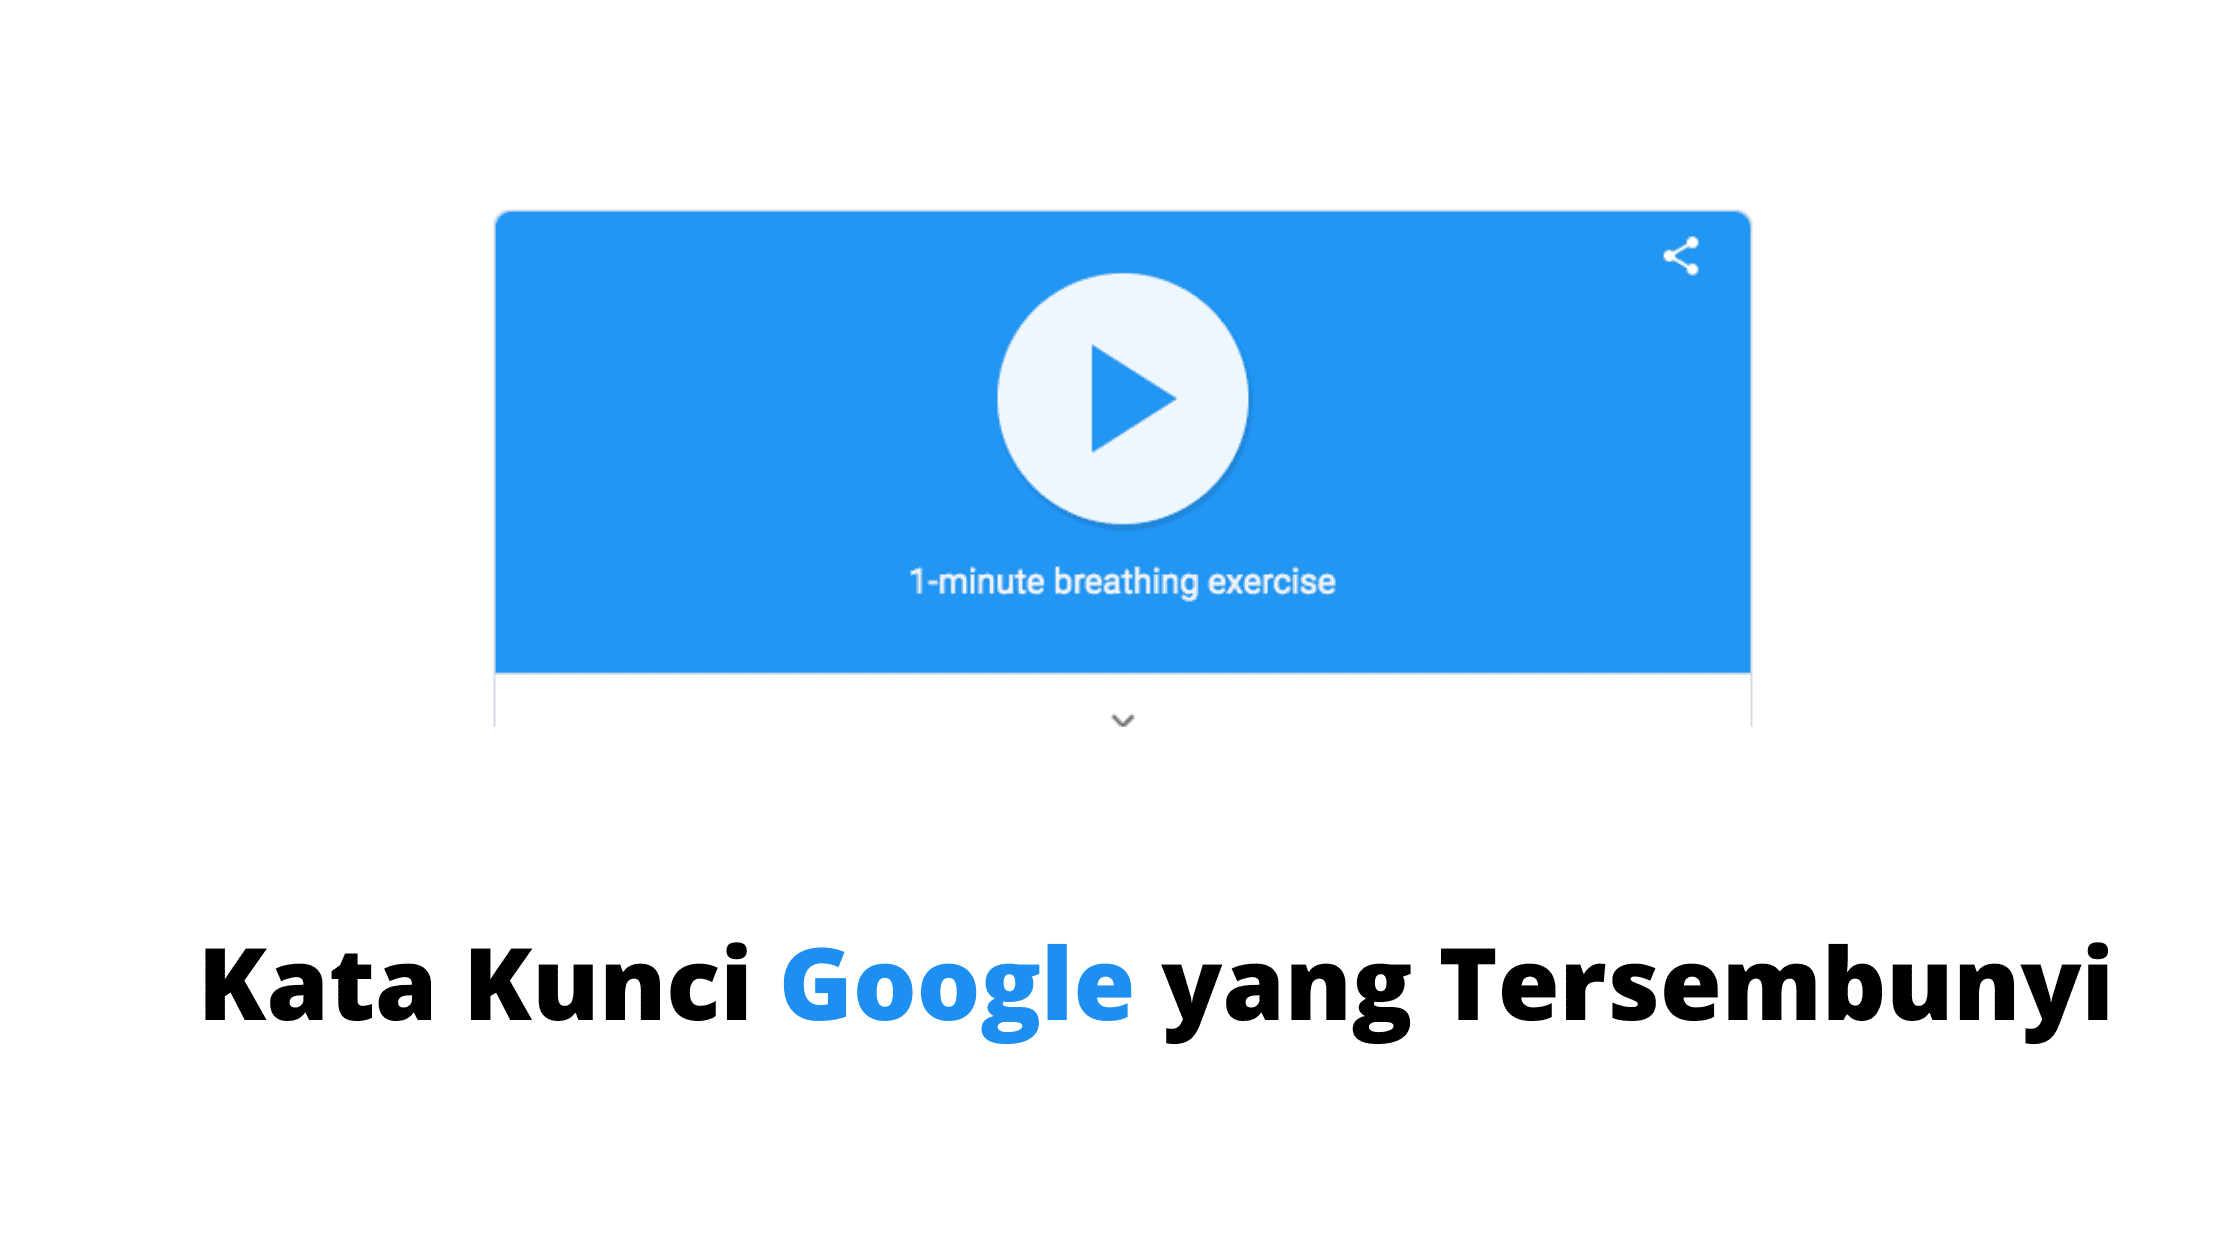 Kata Kunci Google yang Tersembunyi